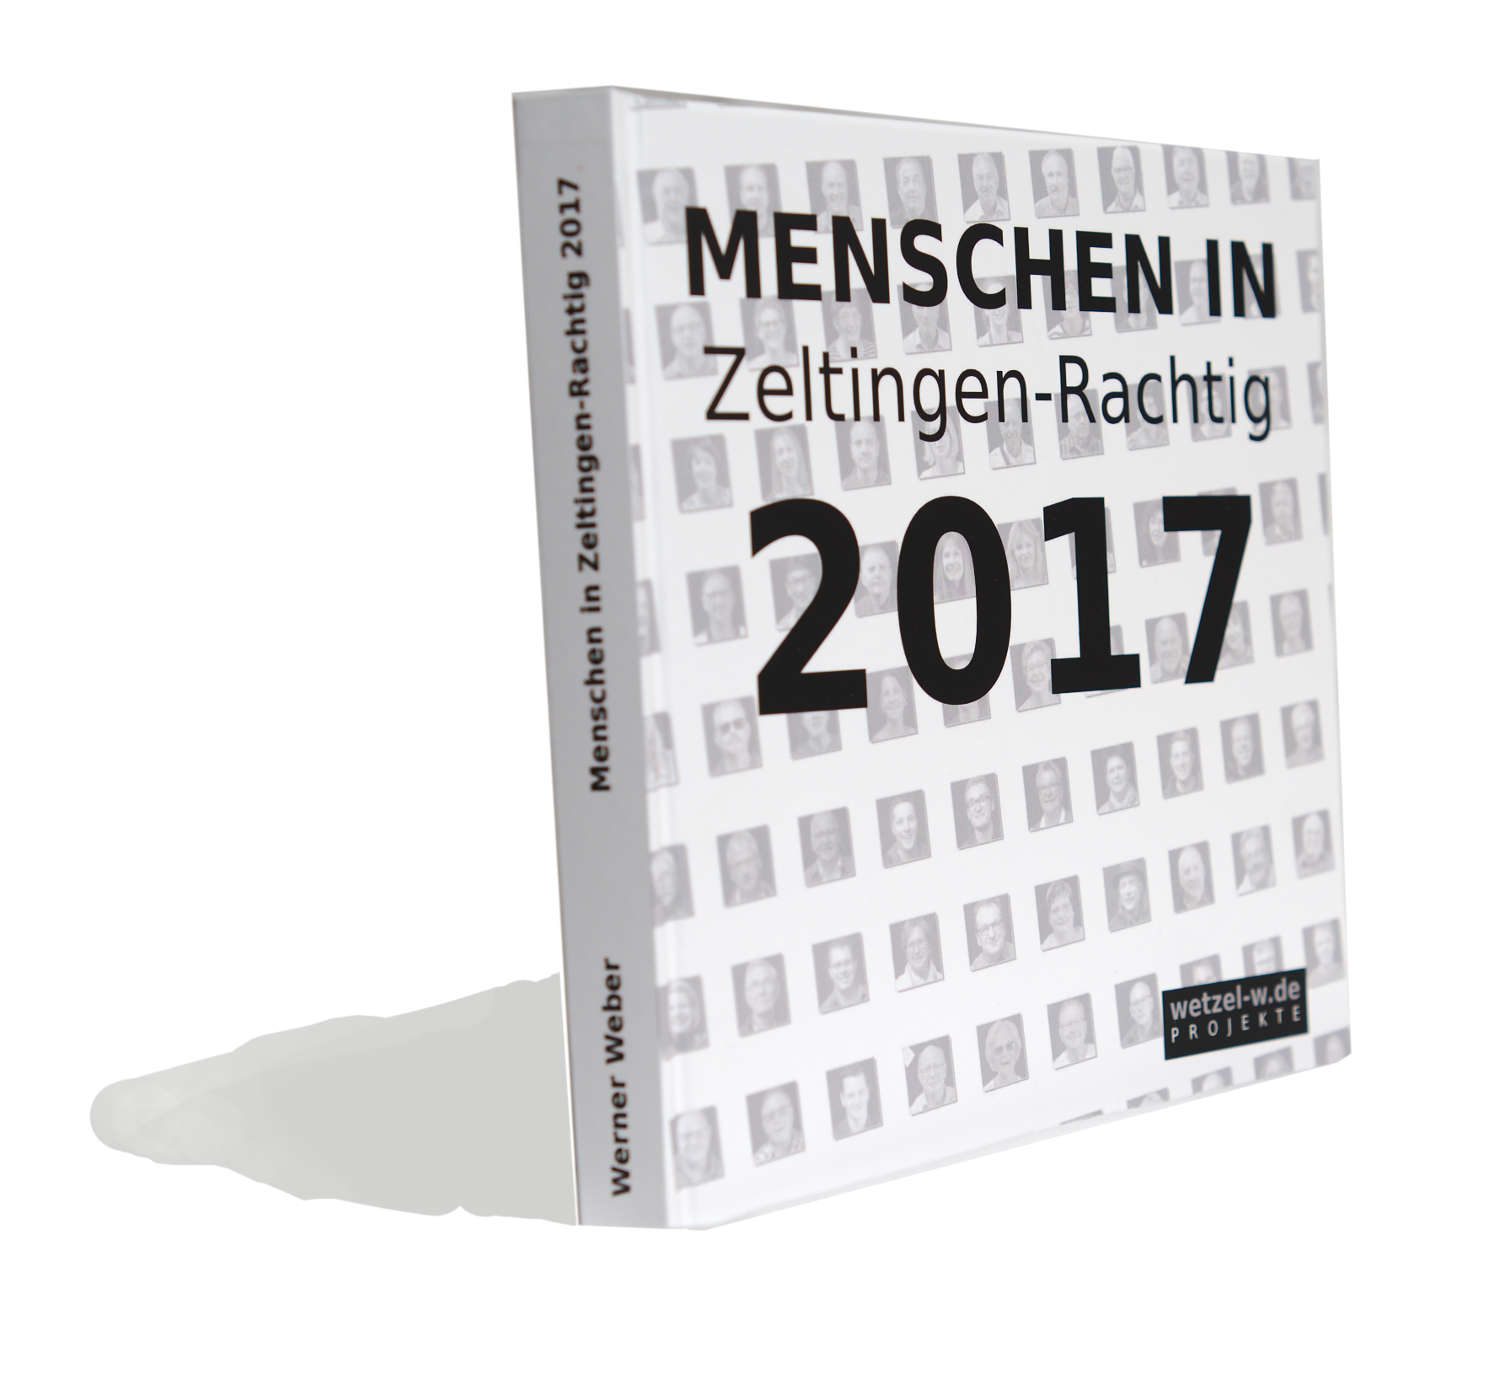 Buch "Menschen in Zeltingen-Tachtig 2017"